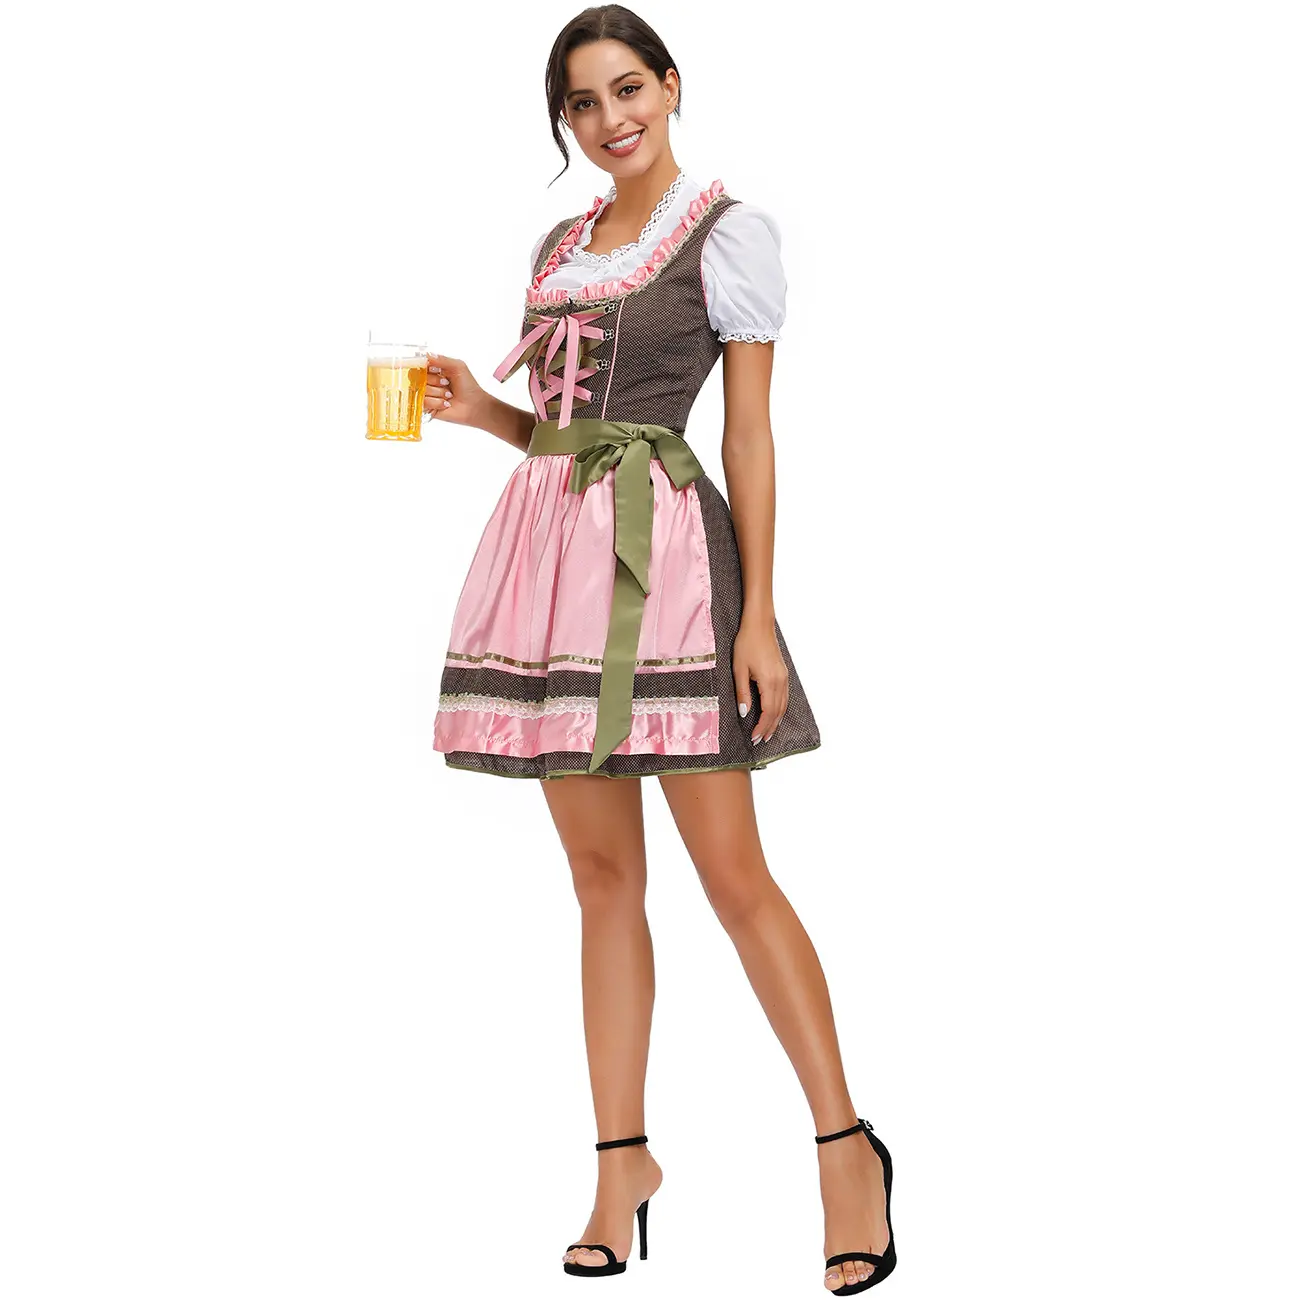 Trang Phục M-XL Thiết Kế Hợp Thời Trang Trang Phục Lễ Hội Oktoberfest Lederhosen Bavarian Cho Nữ Trang Phục Halloween Cho Người Lớn